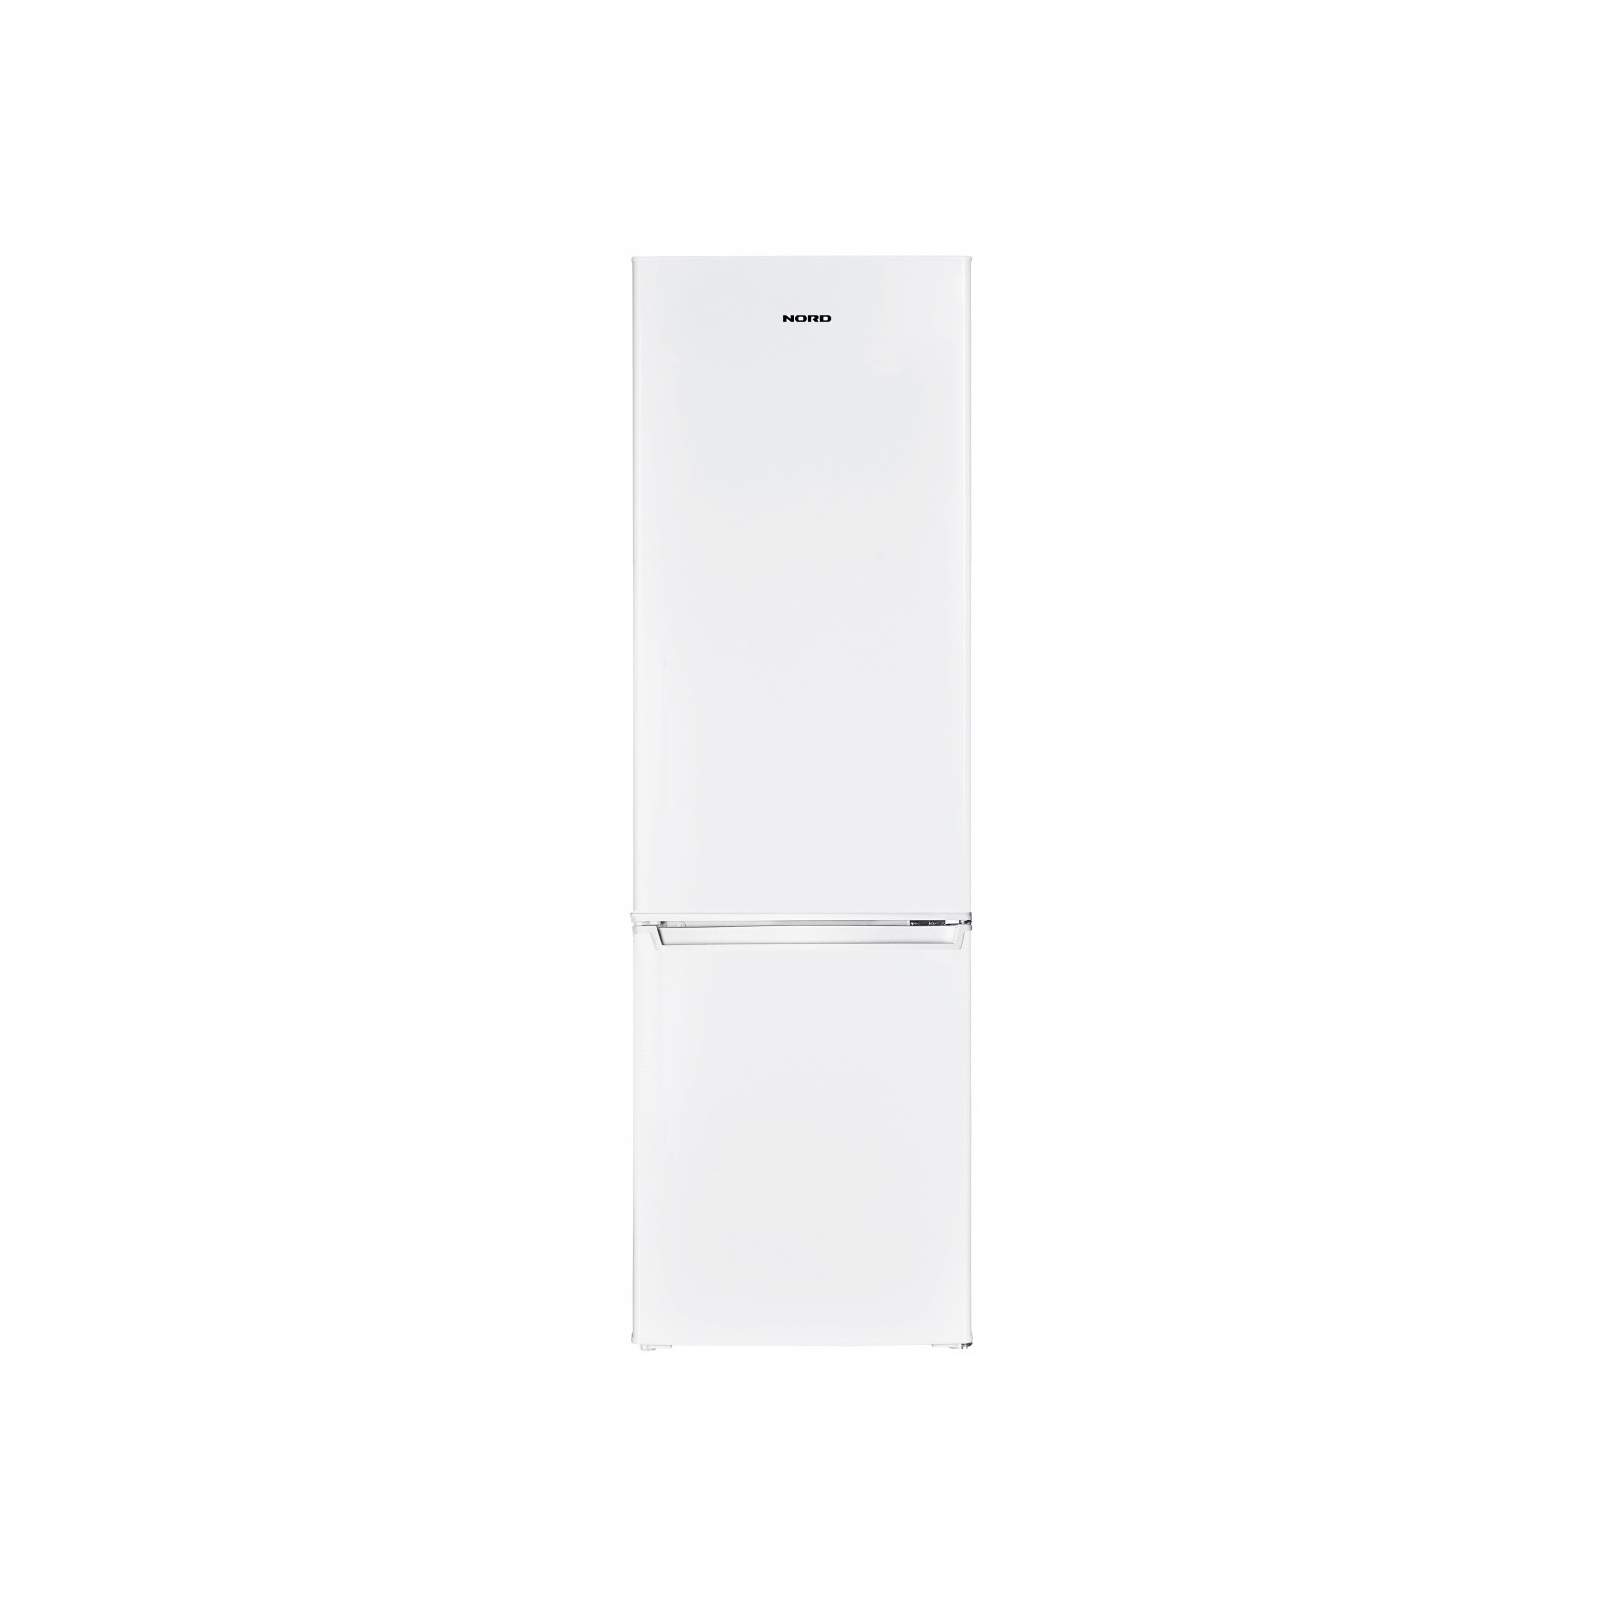 Холодильник Nord HR 176 (HR 176 W)